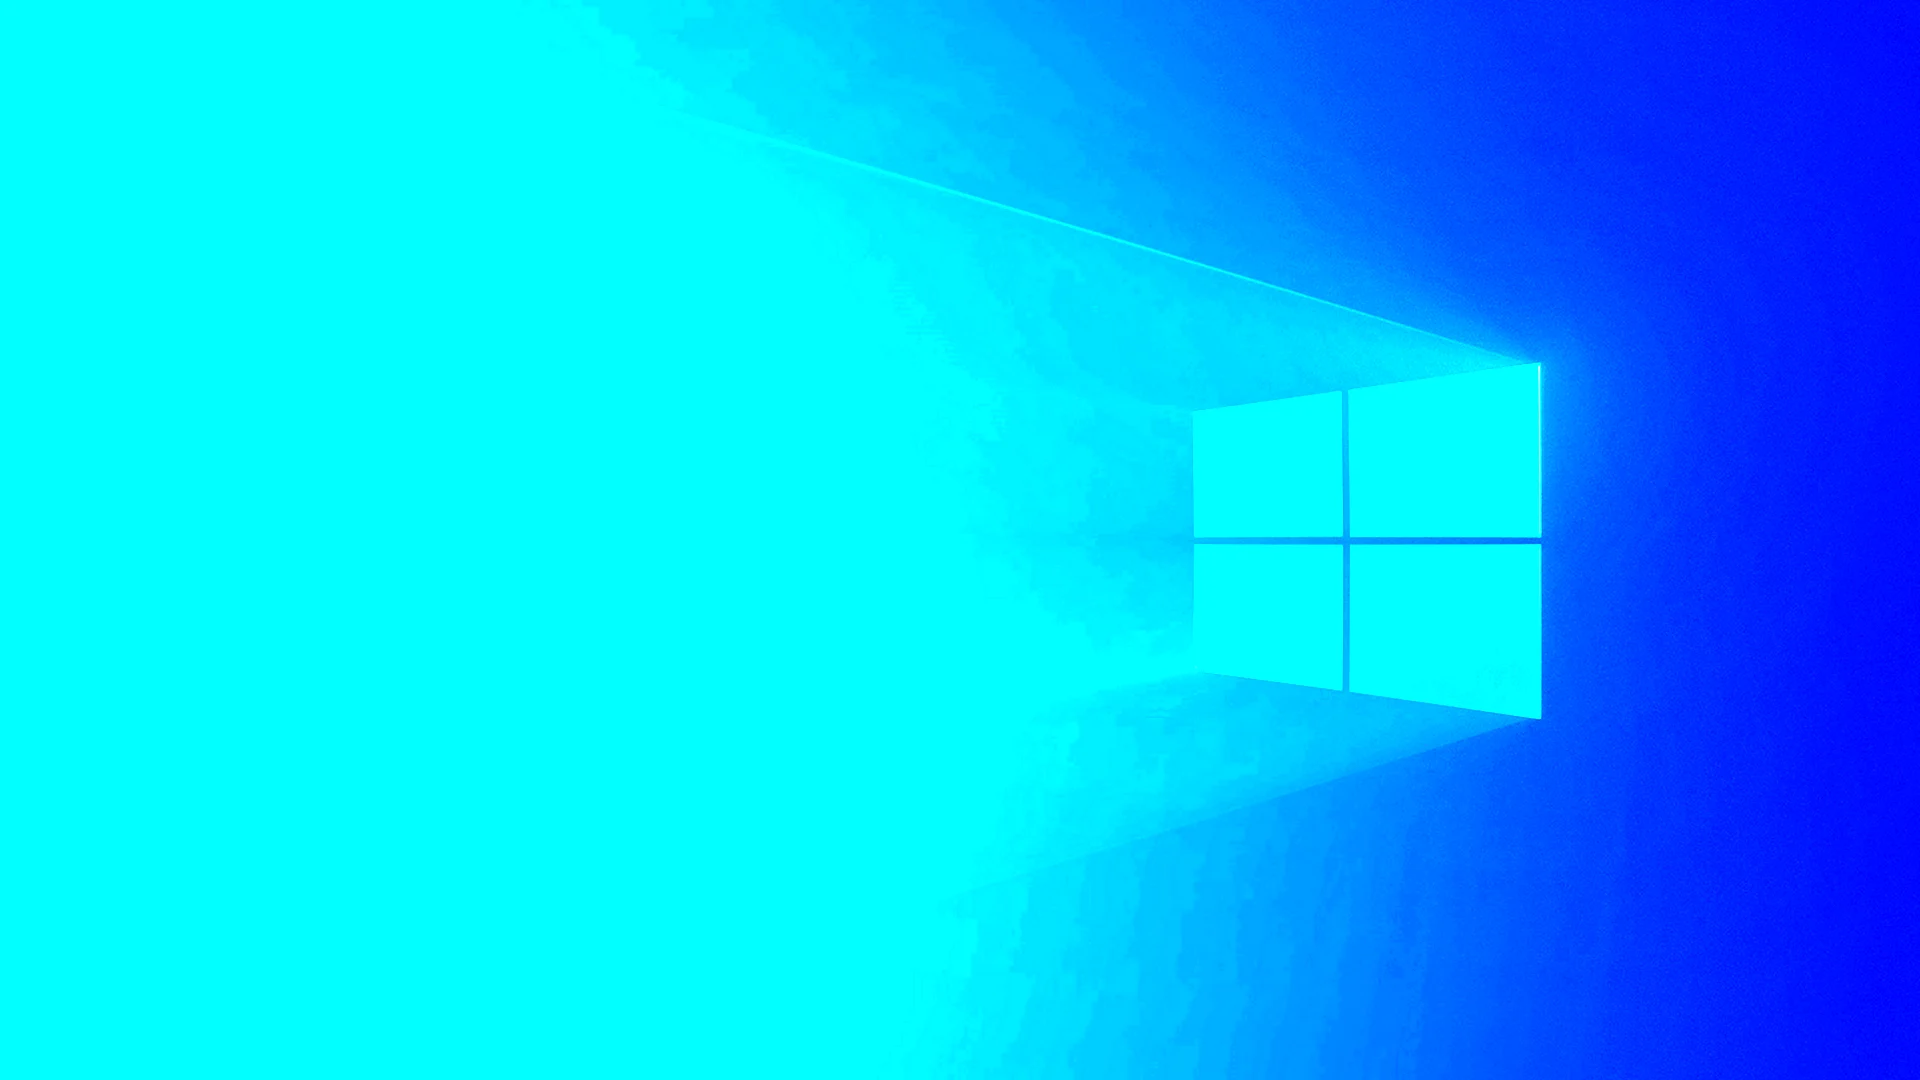 Windows 10 20h2